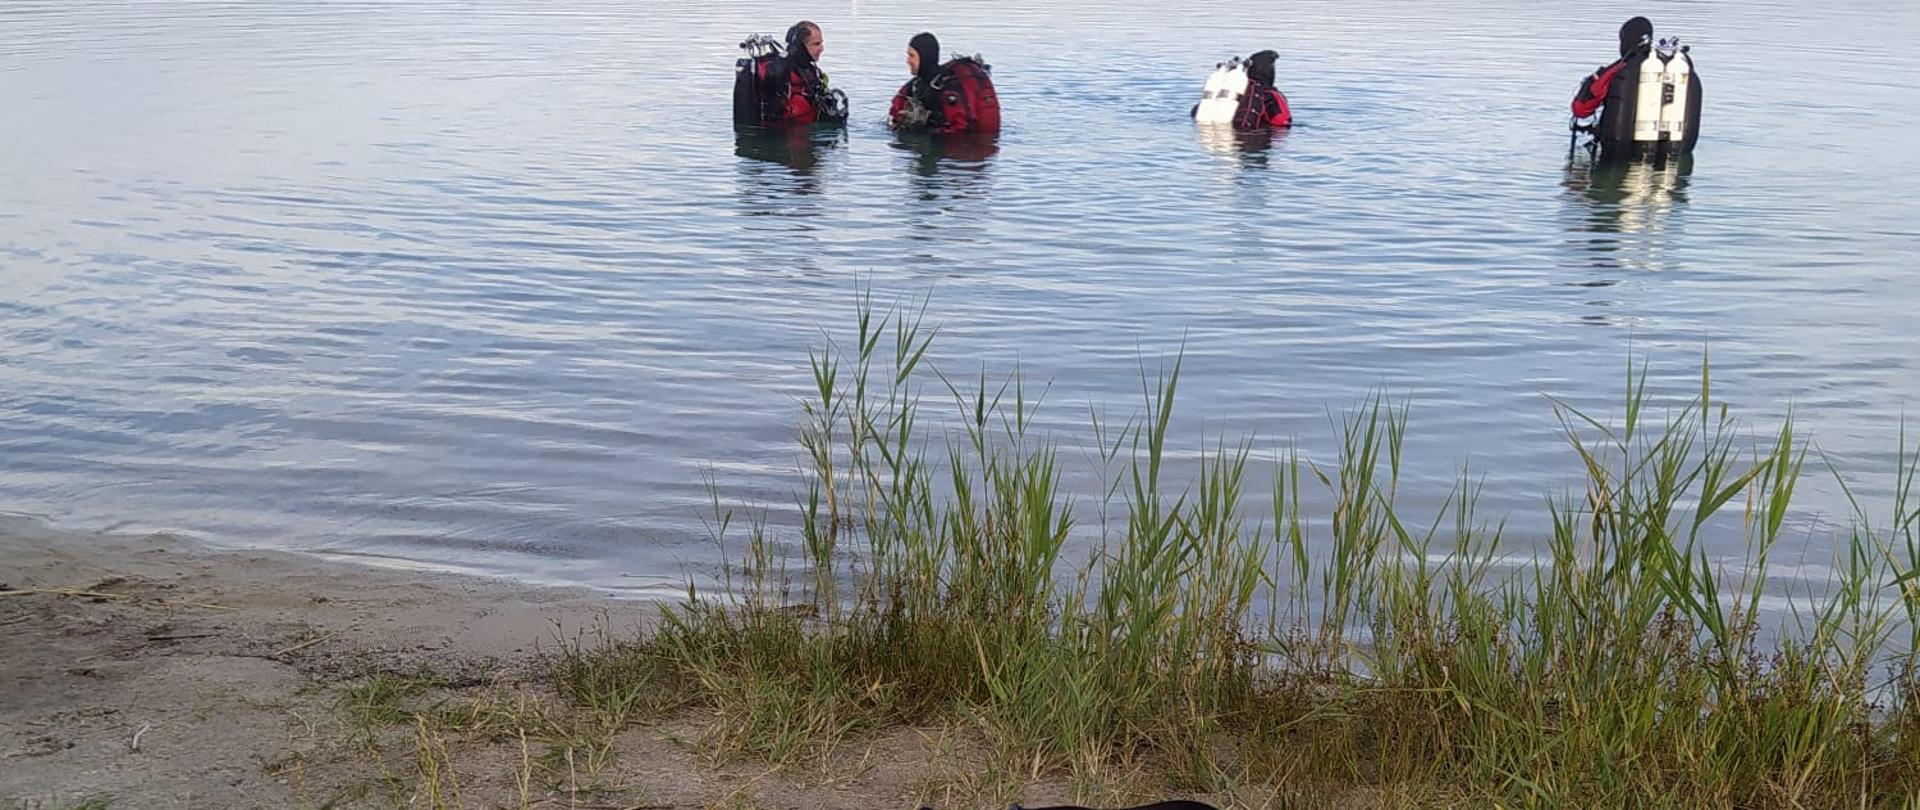 Na brzegu torba do udzielania pierwszej pomocy, w tle akwen wodny z widocznymi ratownikami w ubraniach i aparatach.